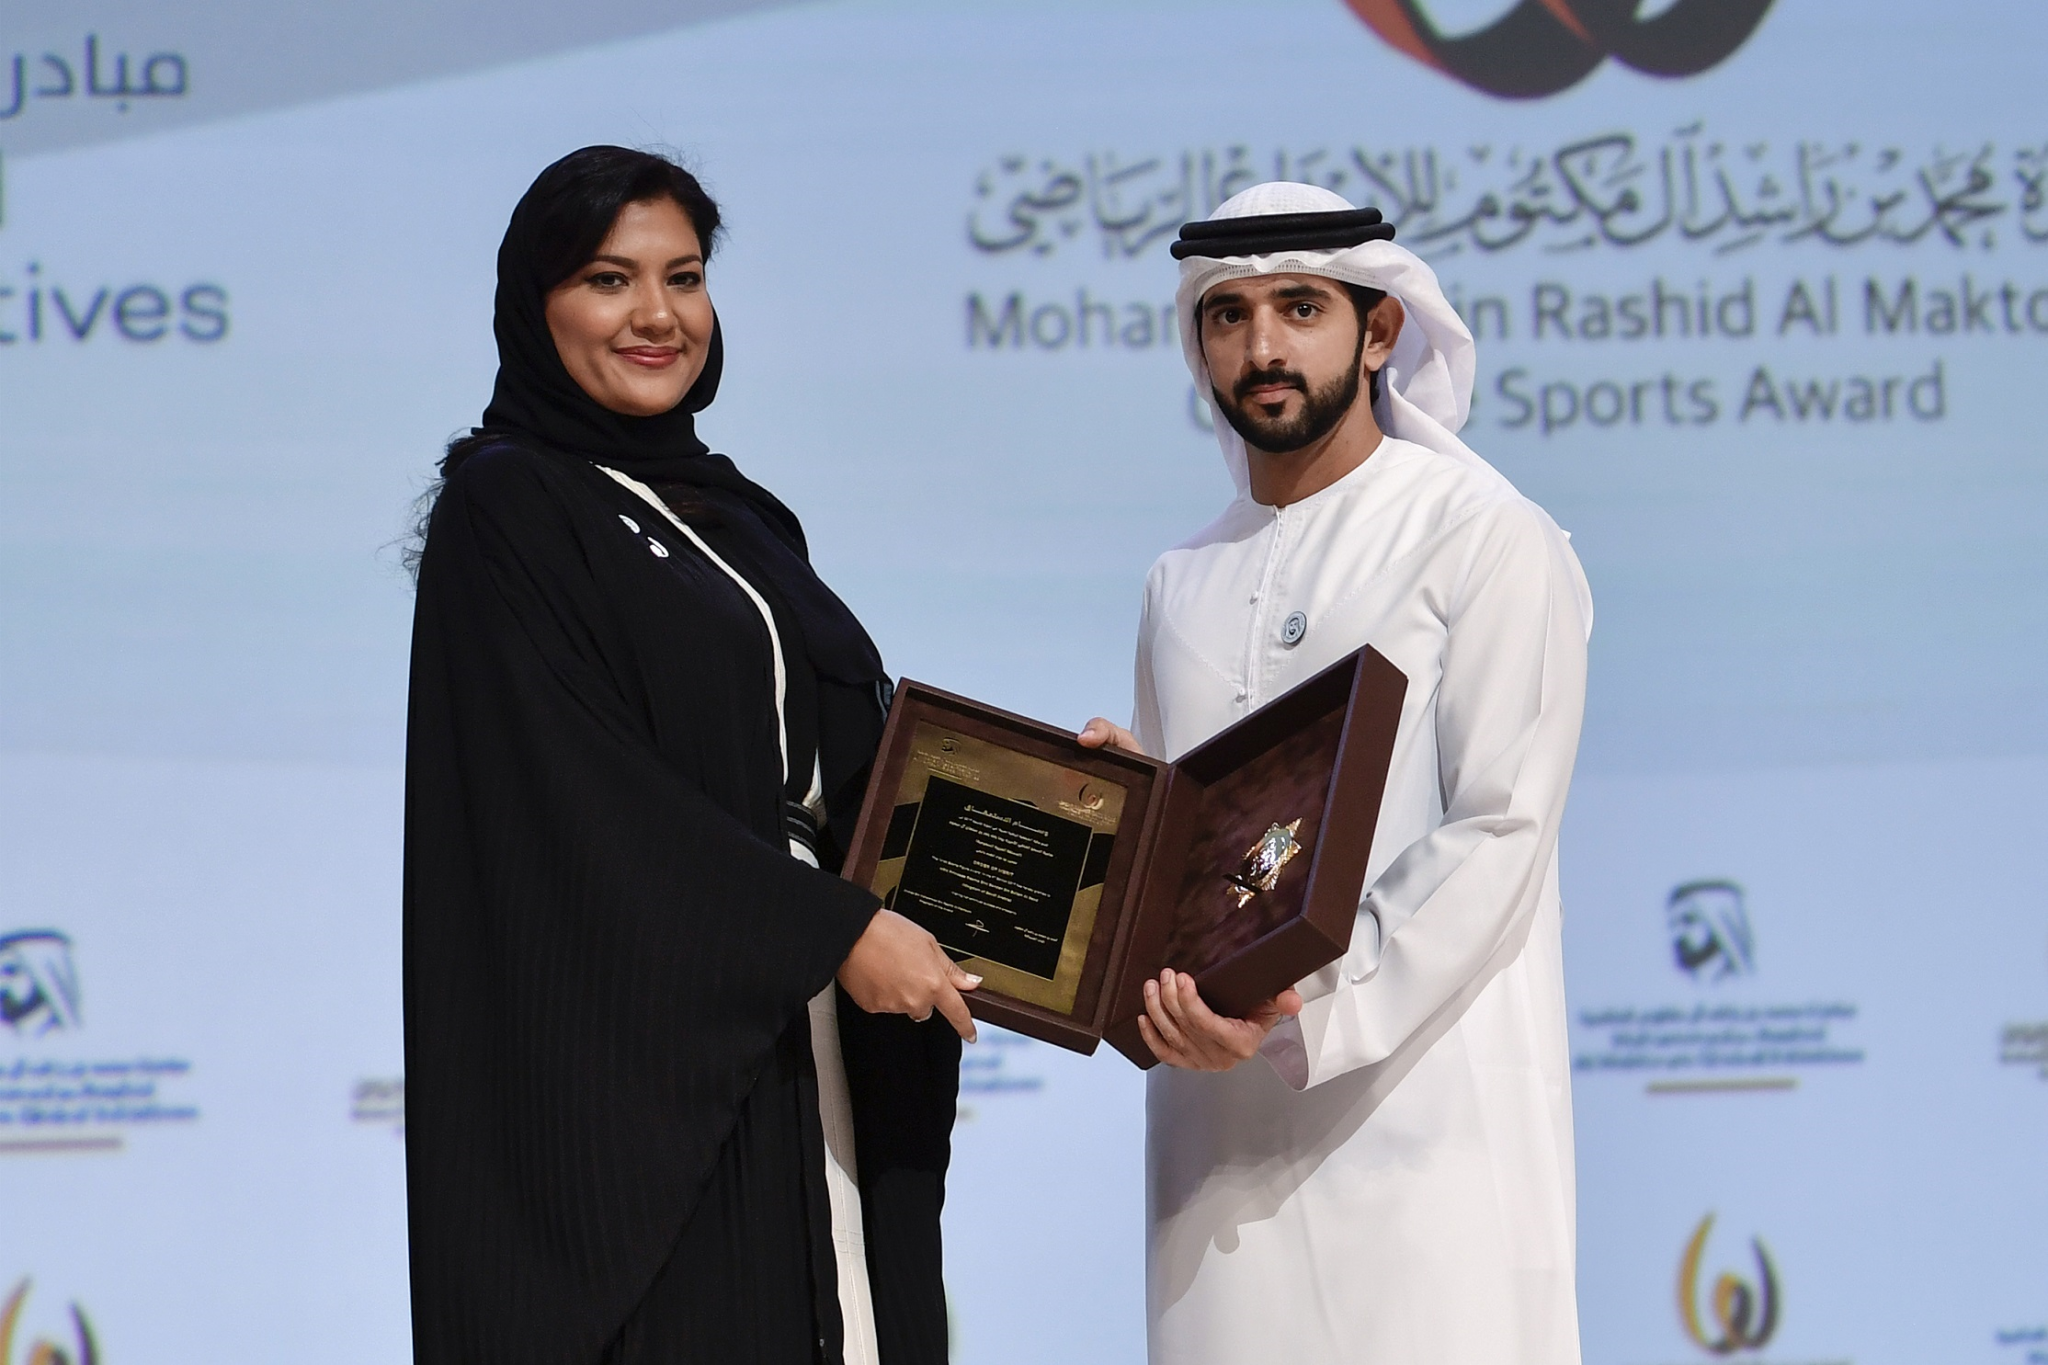 Princess Reema bint Bandar bin Sultan bin Abdulaziz Al Saud won the Arab Sports Personality of the Award ©Mohammed Bin Rashid Al Maktoum Creative Sports Award